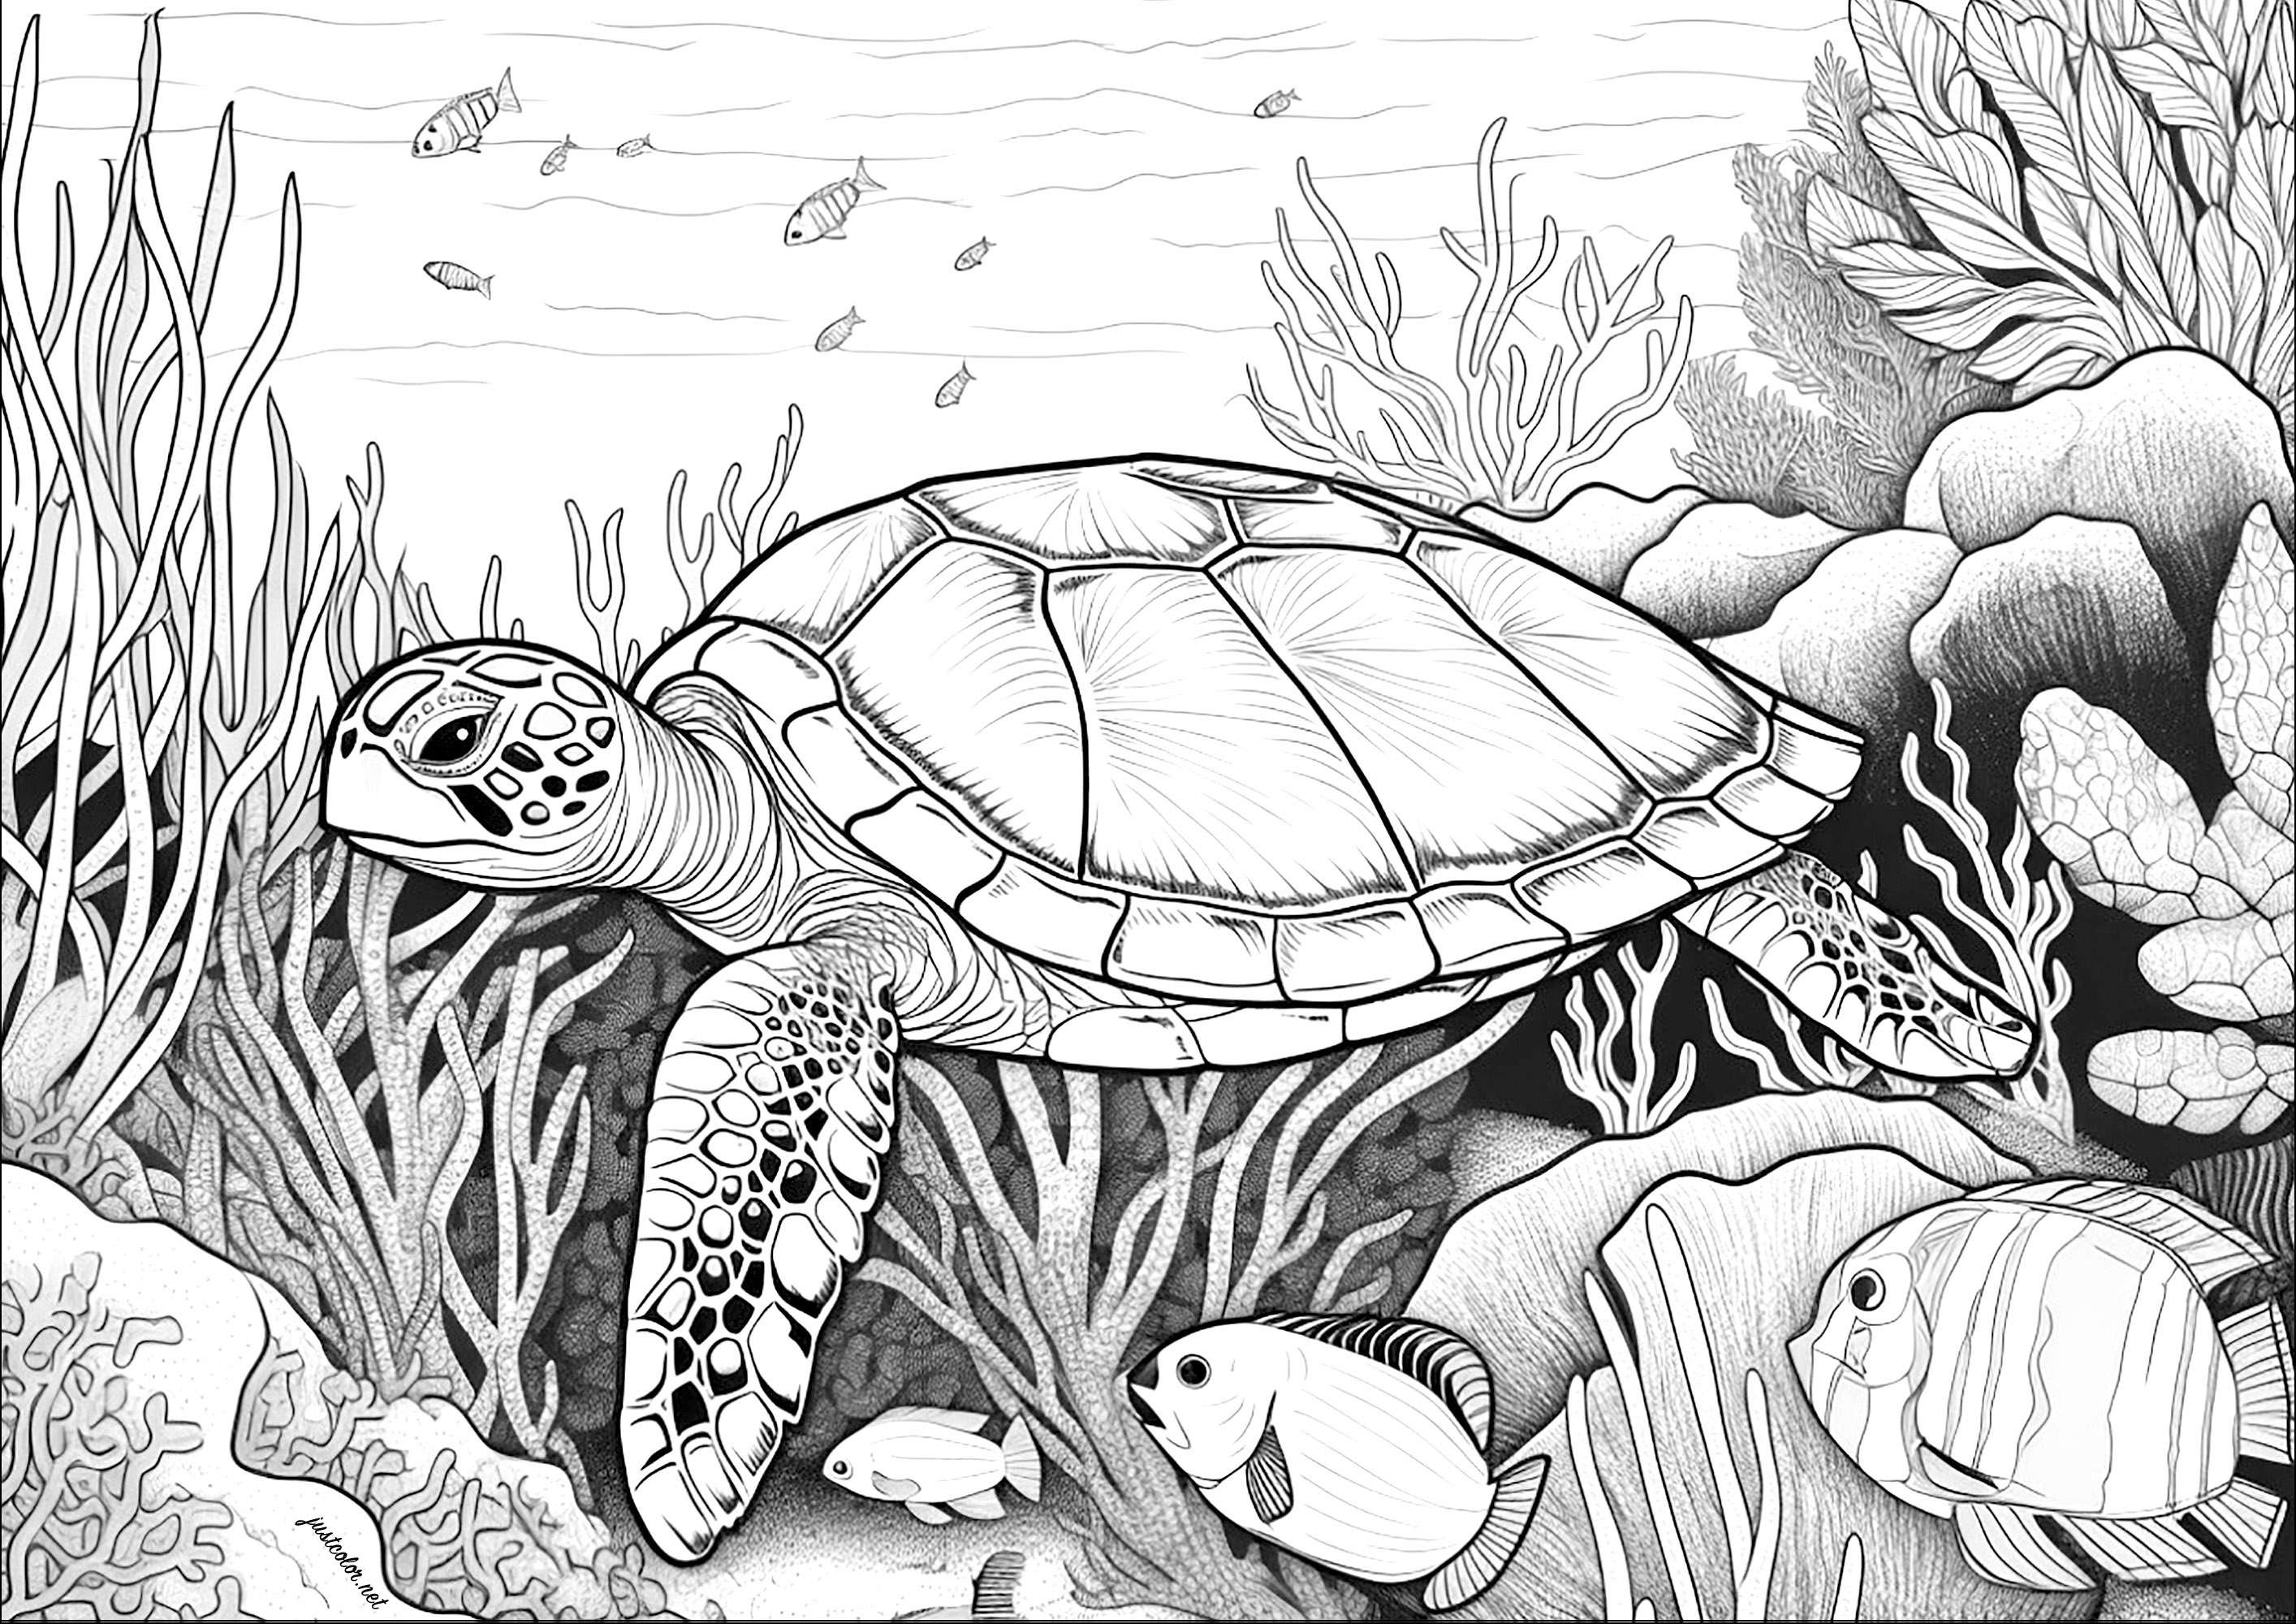 Grande tortue nageant dans les fonds marins. Coloriez également les jolis poissons, coraux et algues marines